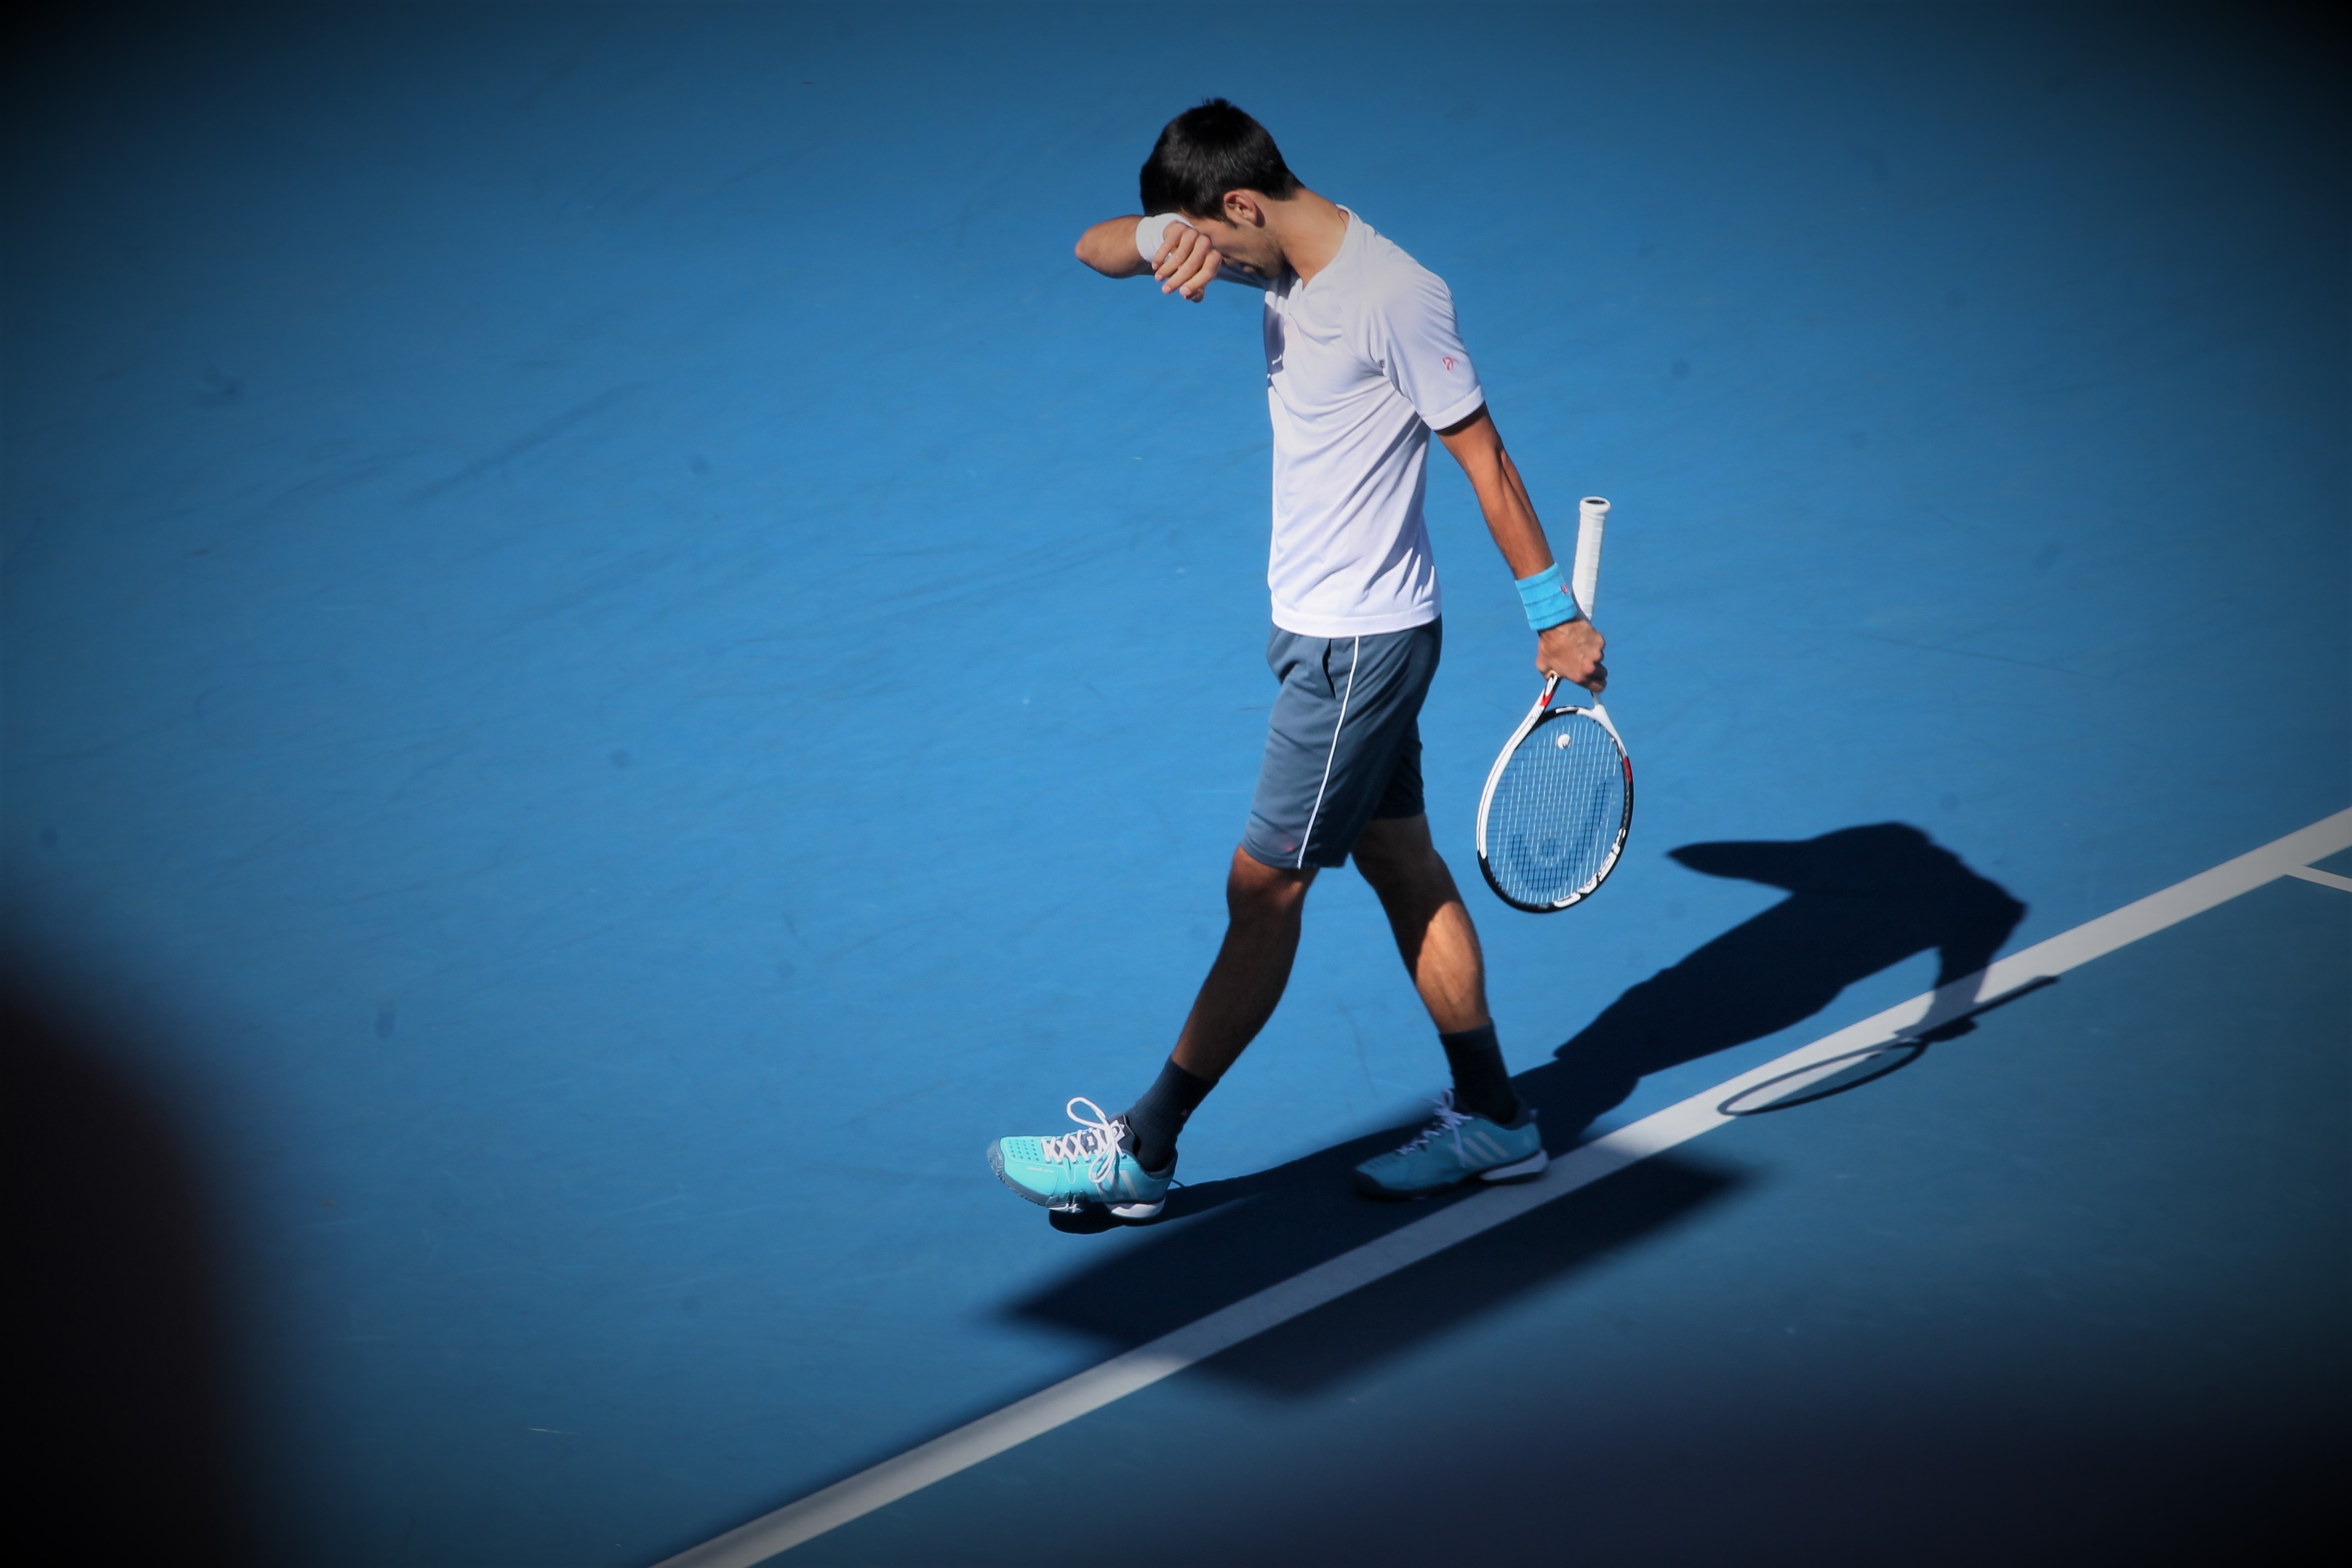 Novak Djokovic / SoTennis